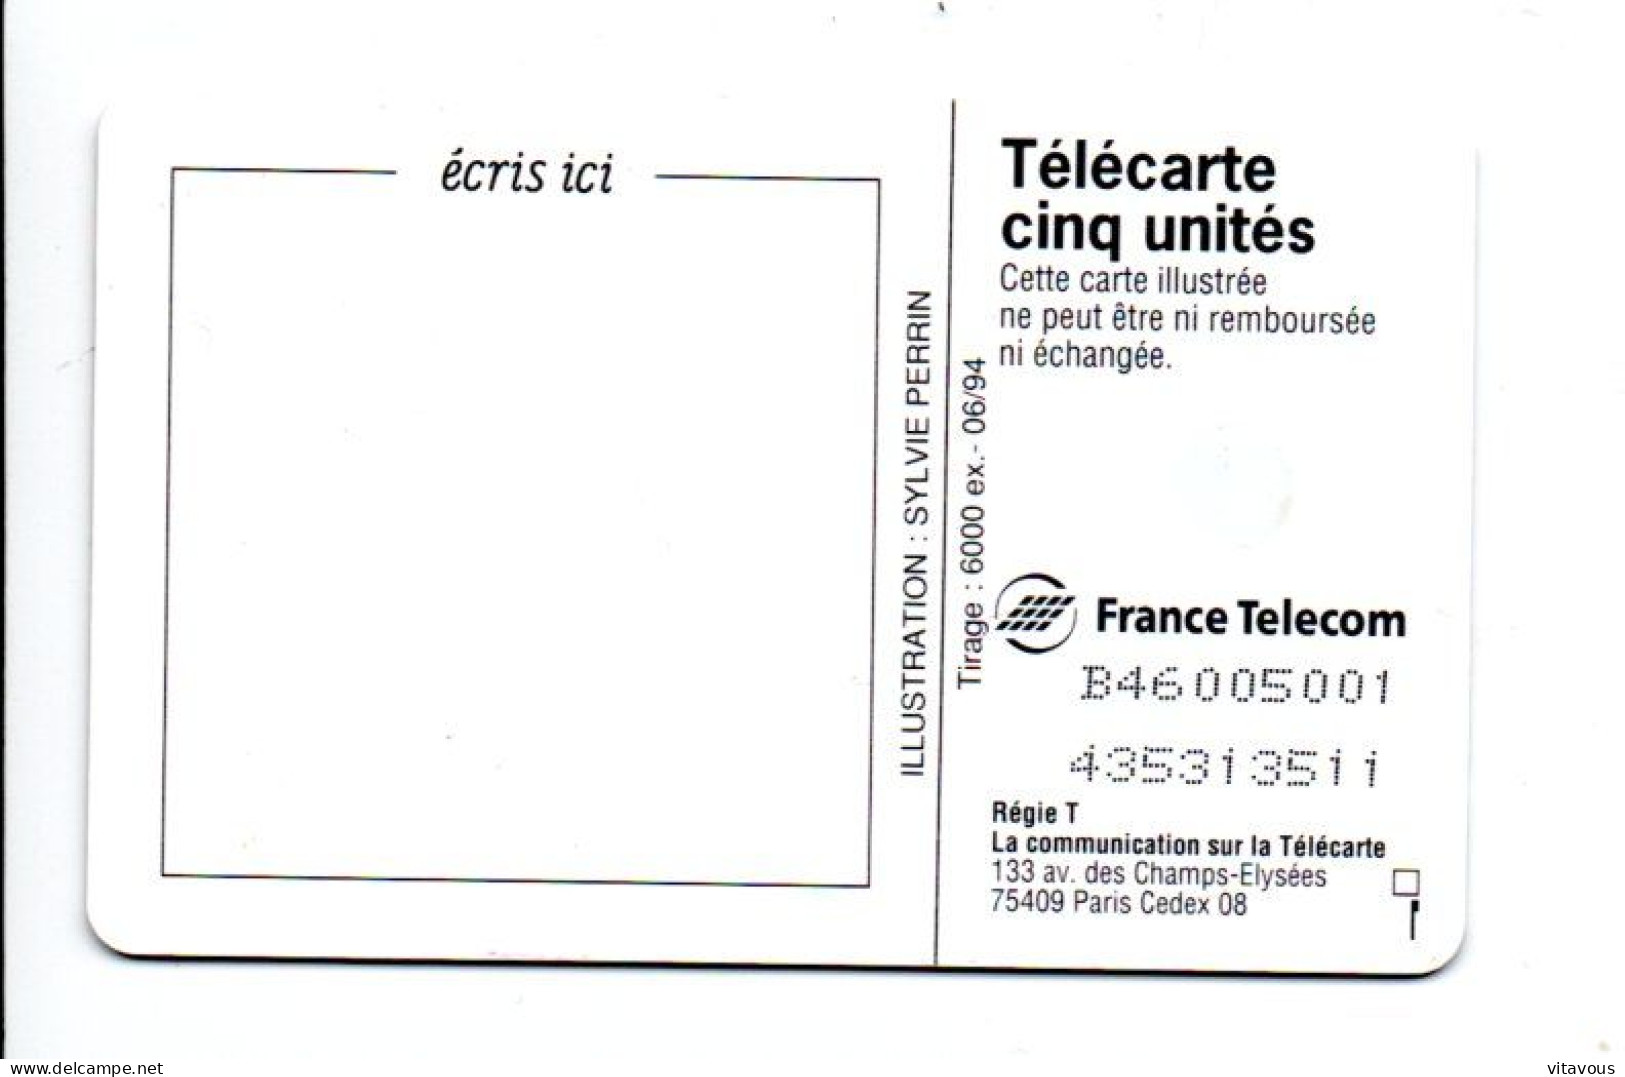 GN 39 Joyeux Anniversaire Gâteau Cake Télécarte FRANCE 5 Unités Phonecard (F 105) - 5 Units